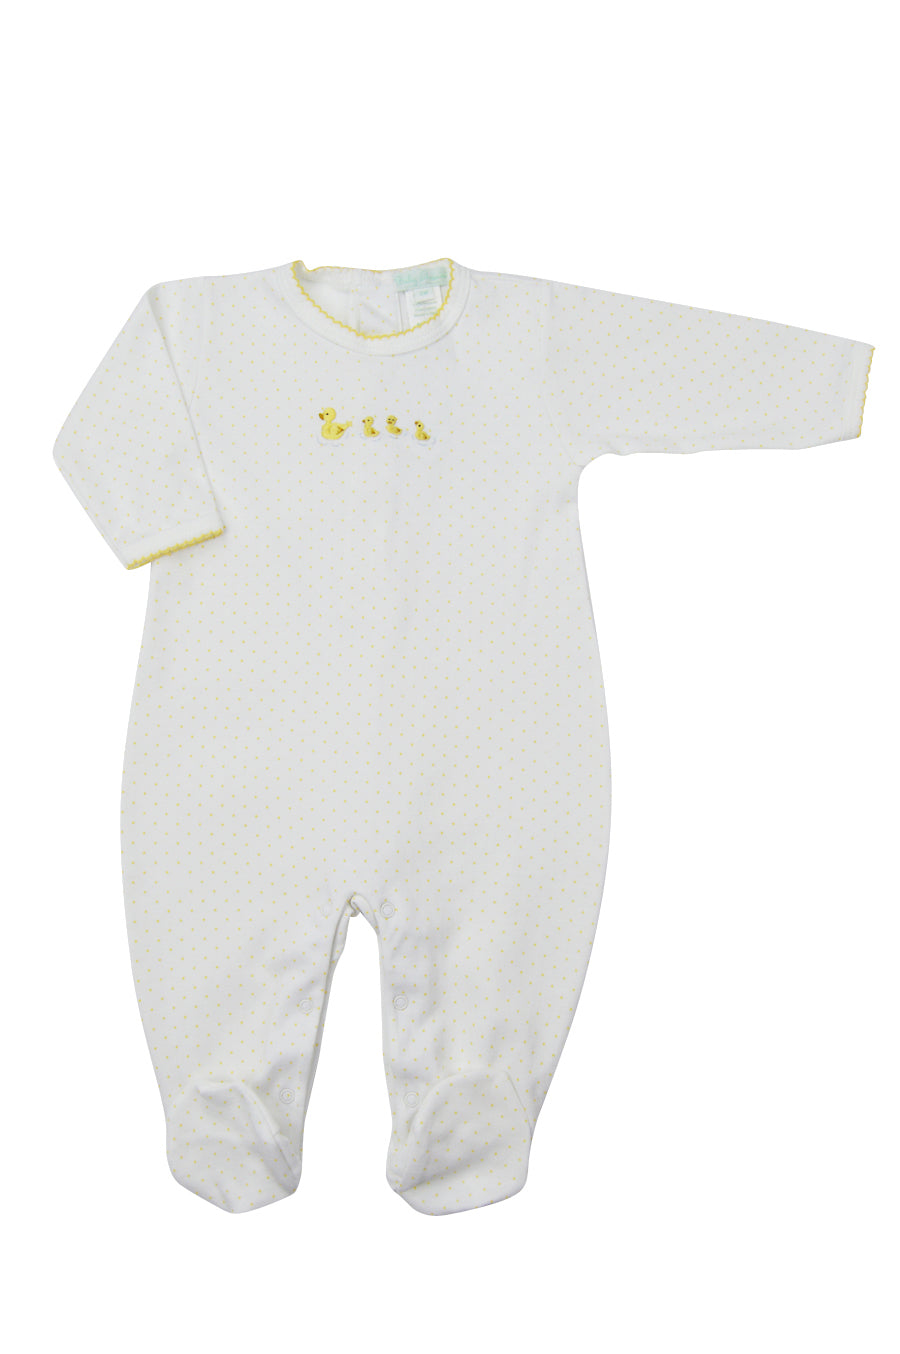 Baby Duckie Footie - Little Threads Inc. Children's Clothing